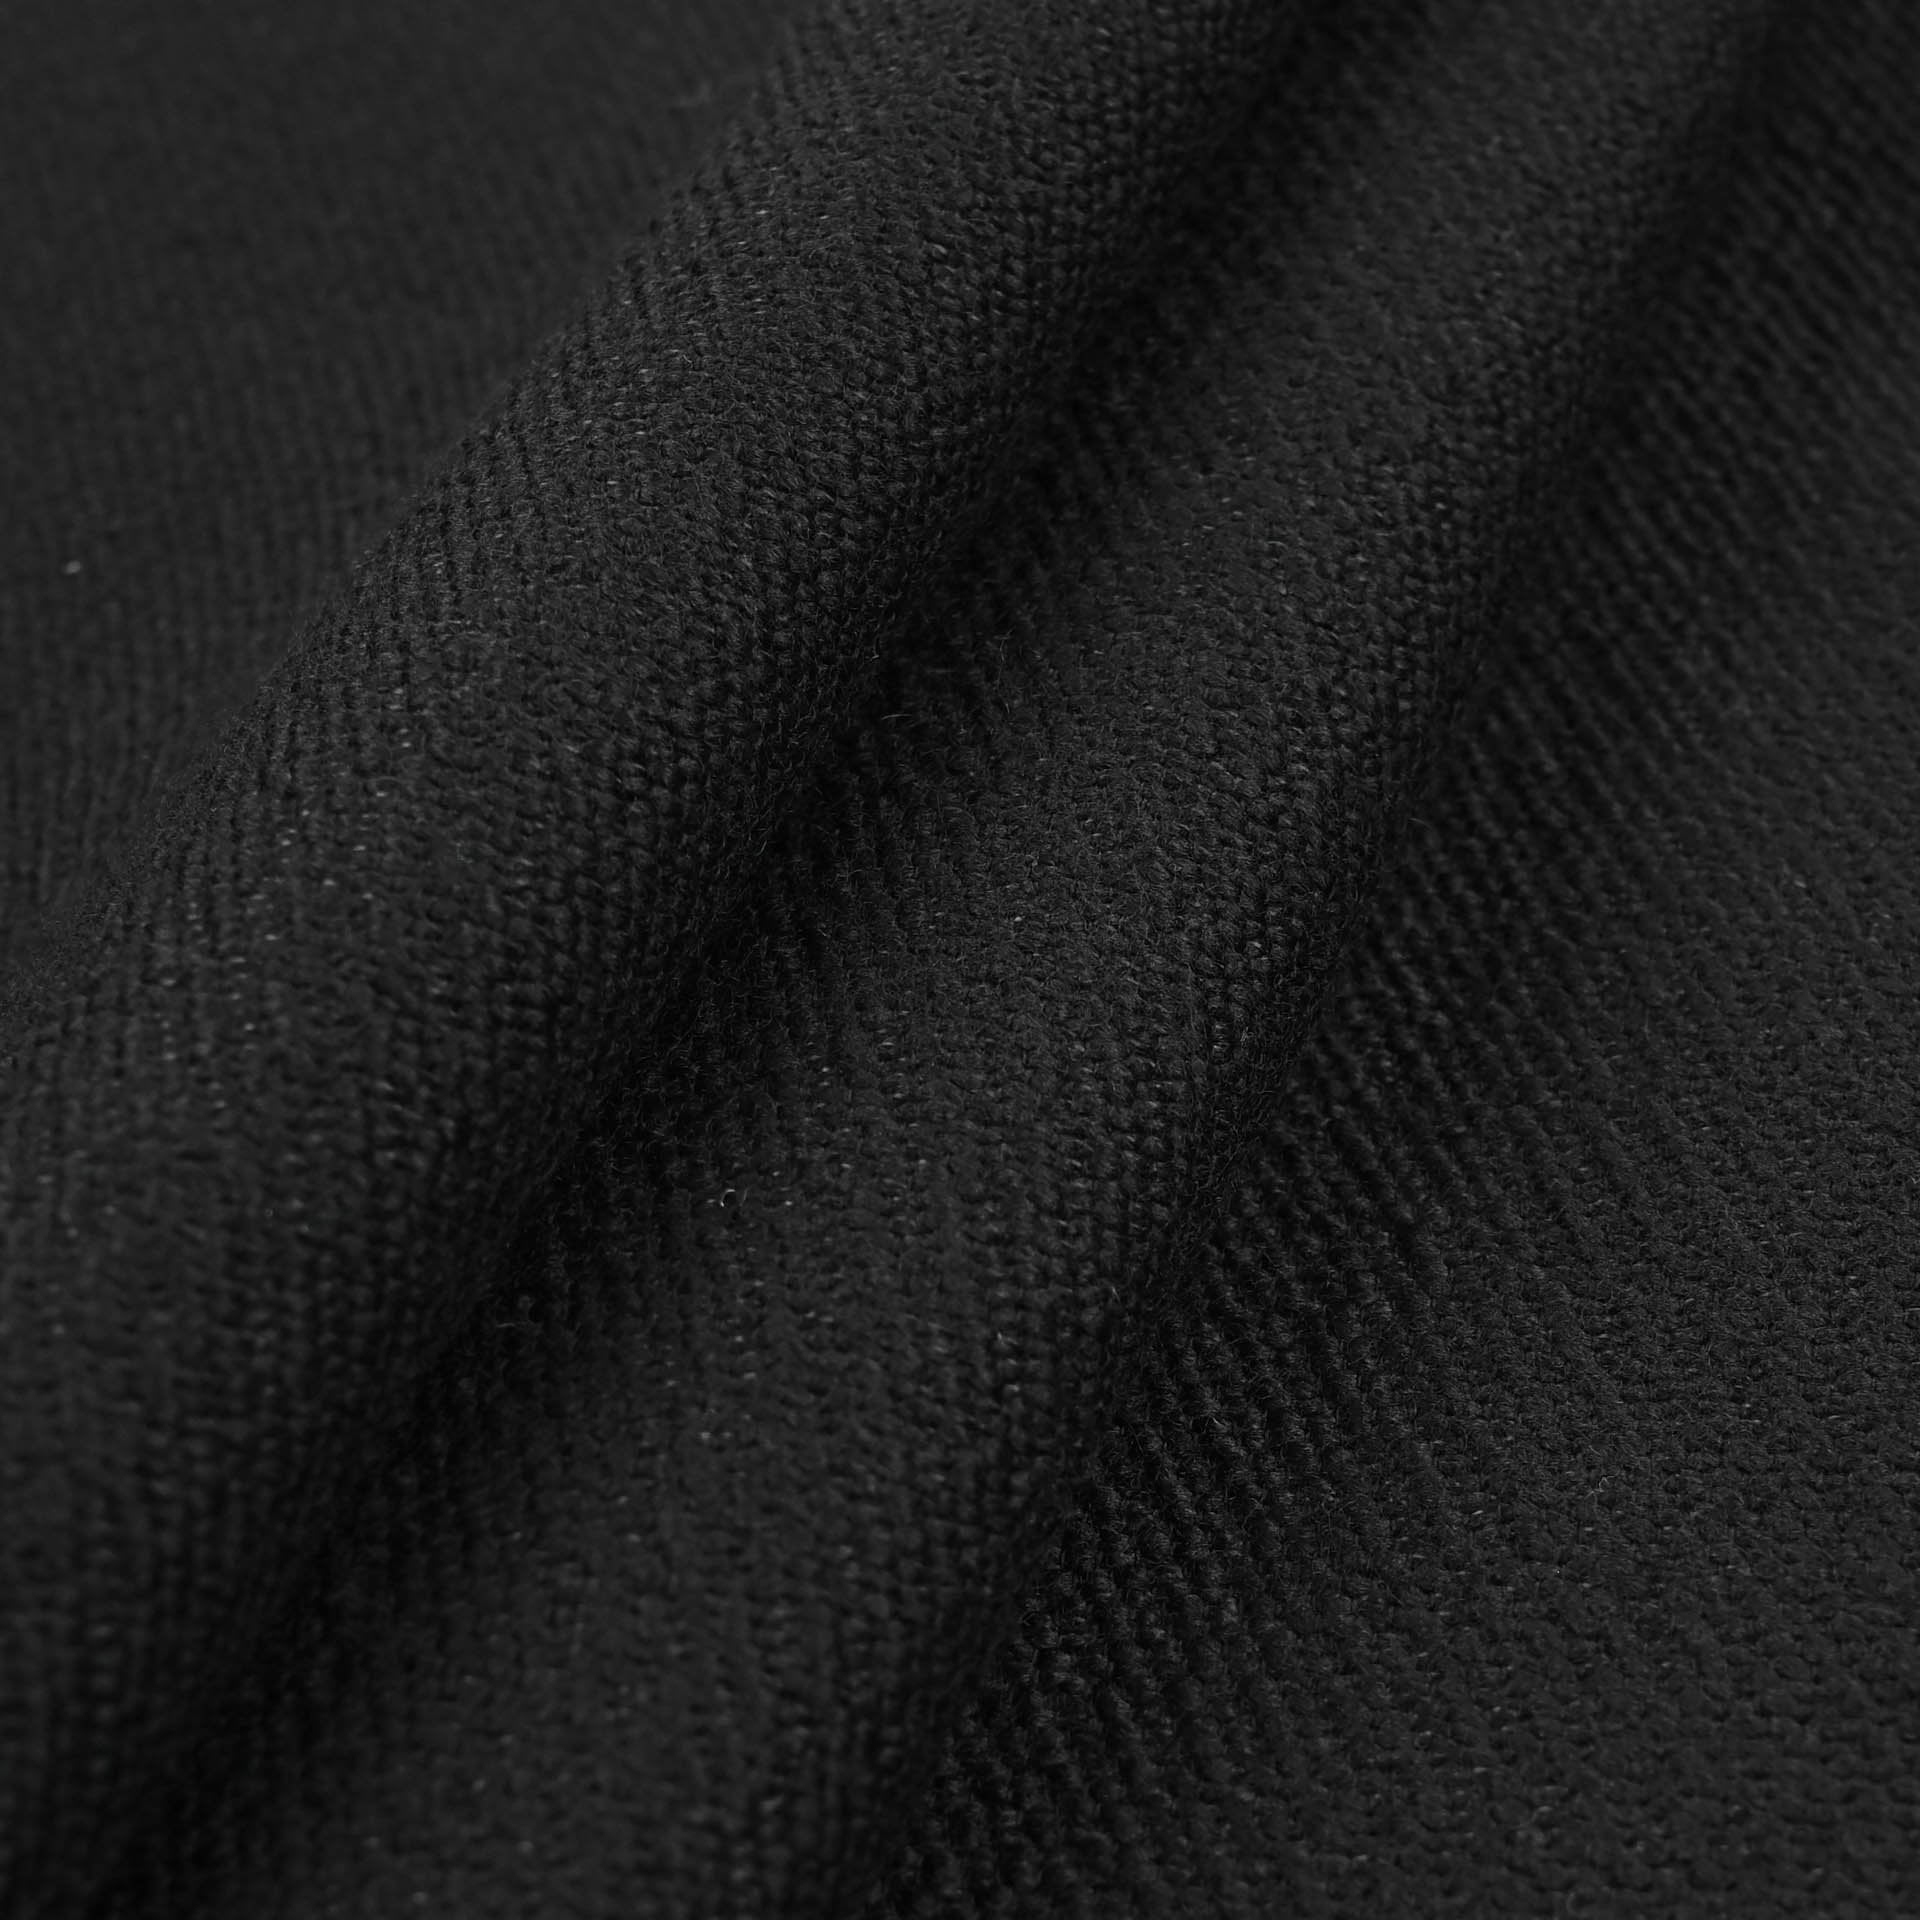 Black Coating Fabric 96905